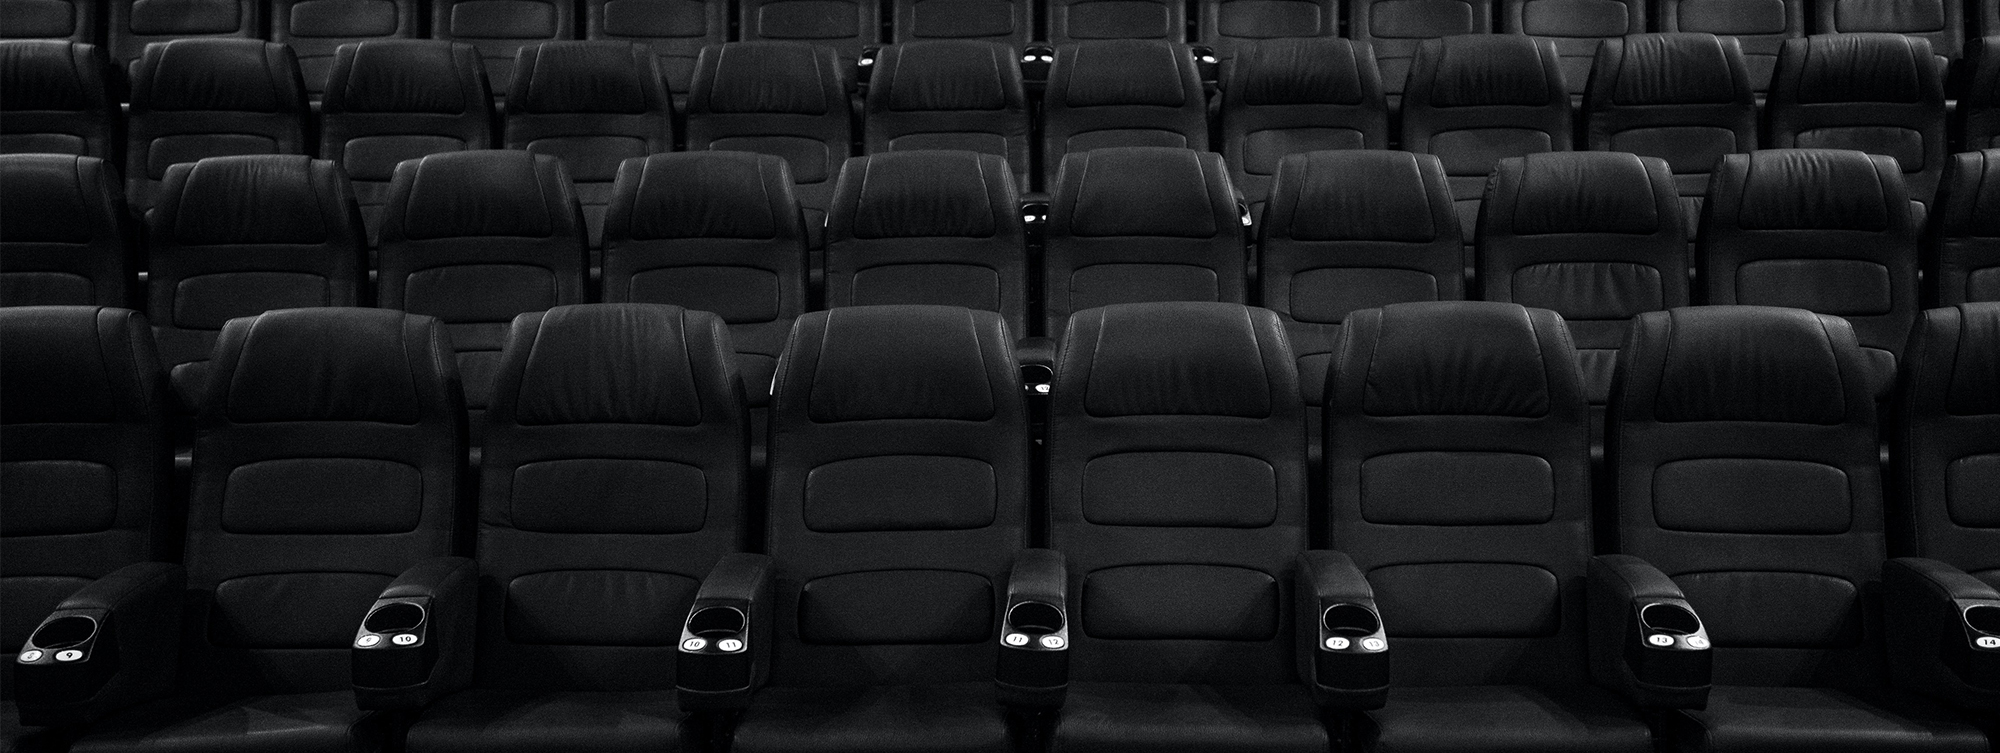 Российские кинотеатры станут доступнее для незрячих гостей